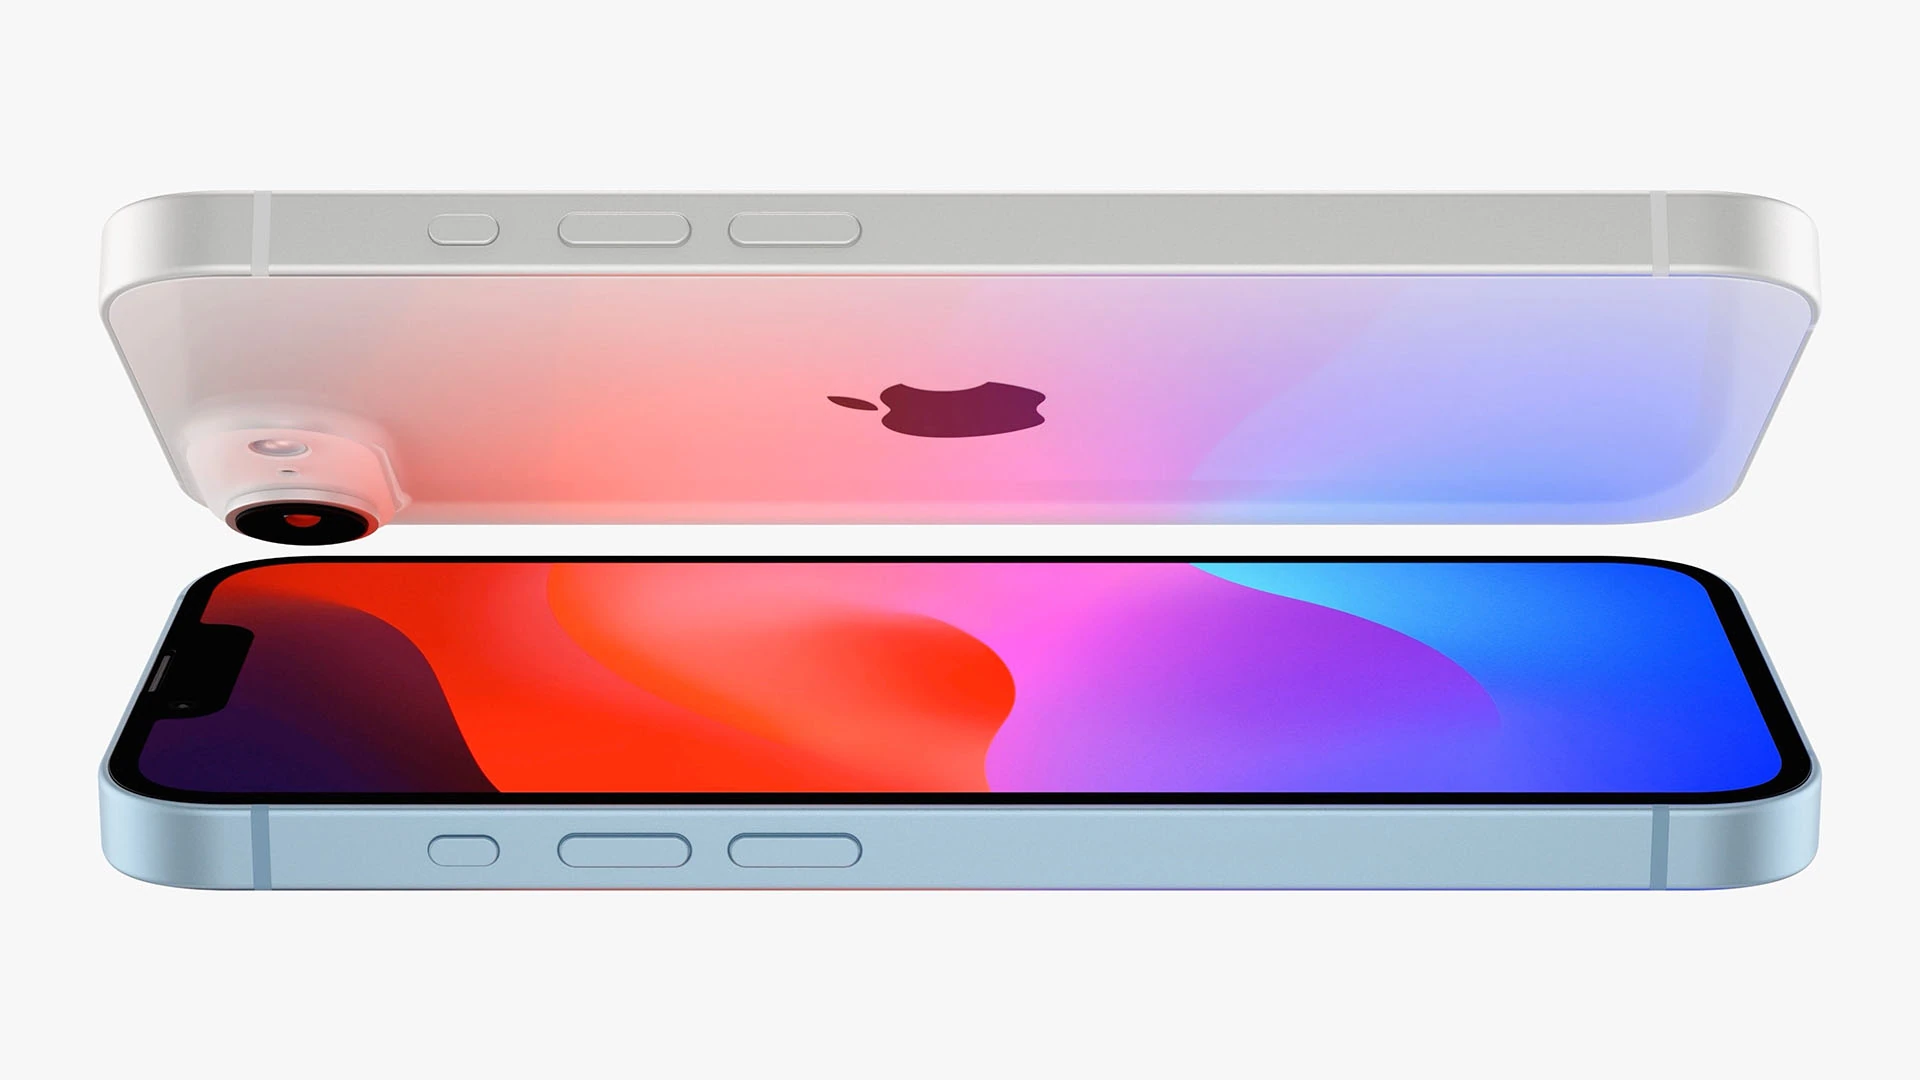 将旧版 iPhone4 升级为安卓系统：技术挑战与心灵之旅的探索  第9张